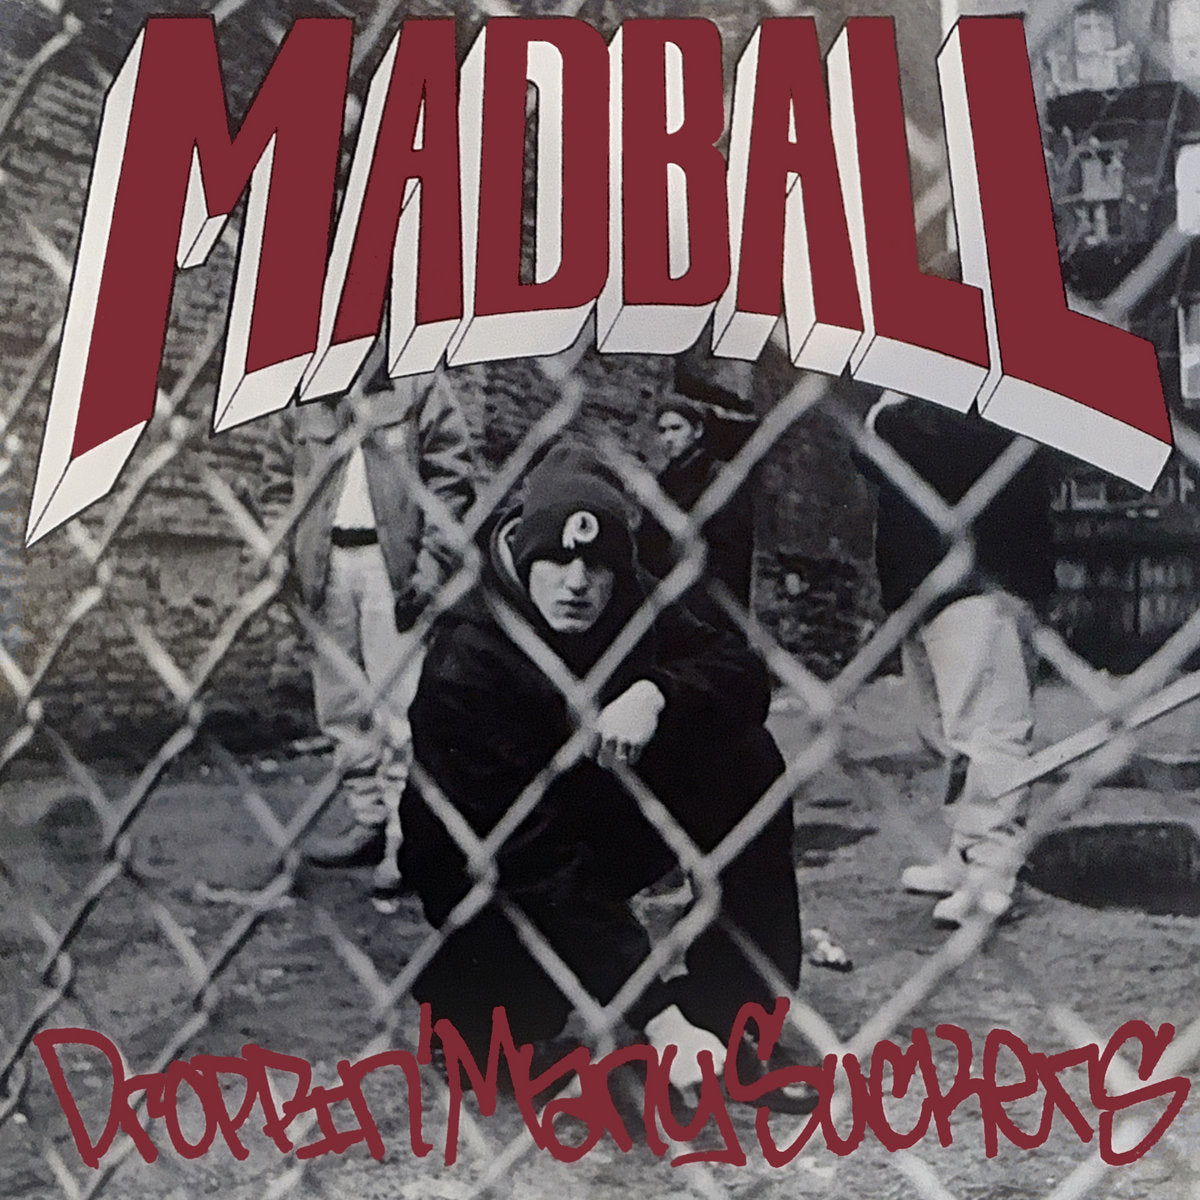 Madball "Droppin' Many Suckers" 12" Vinyl